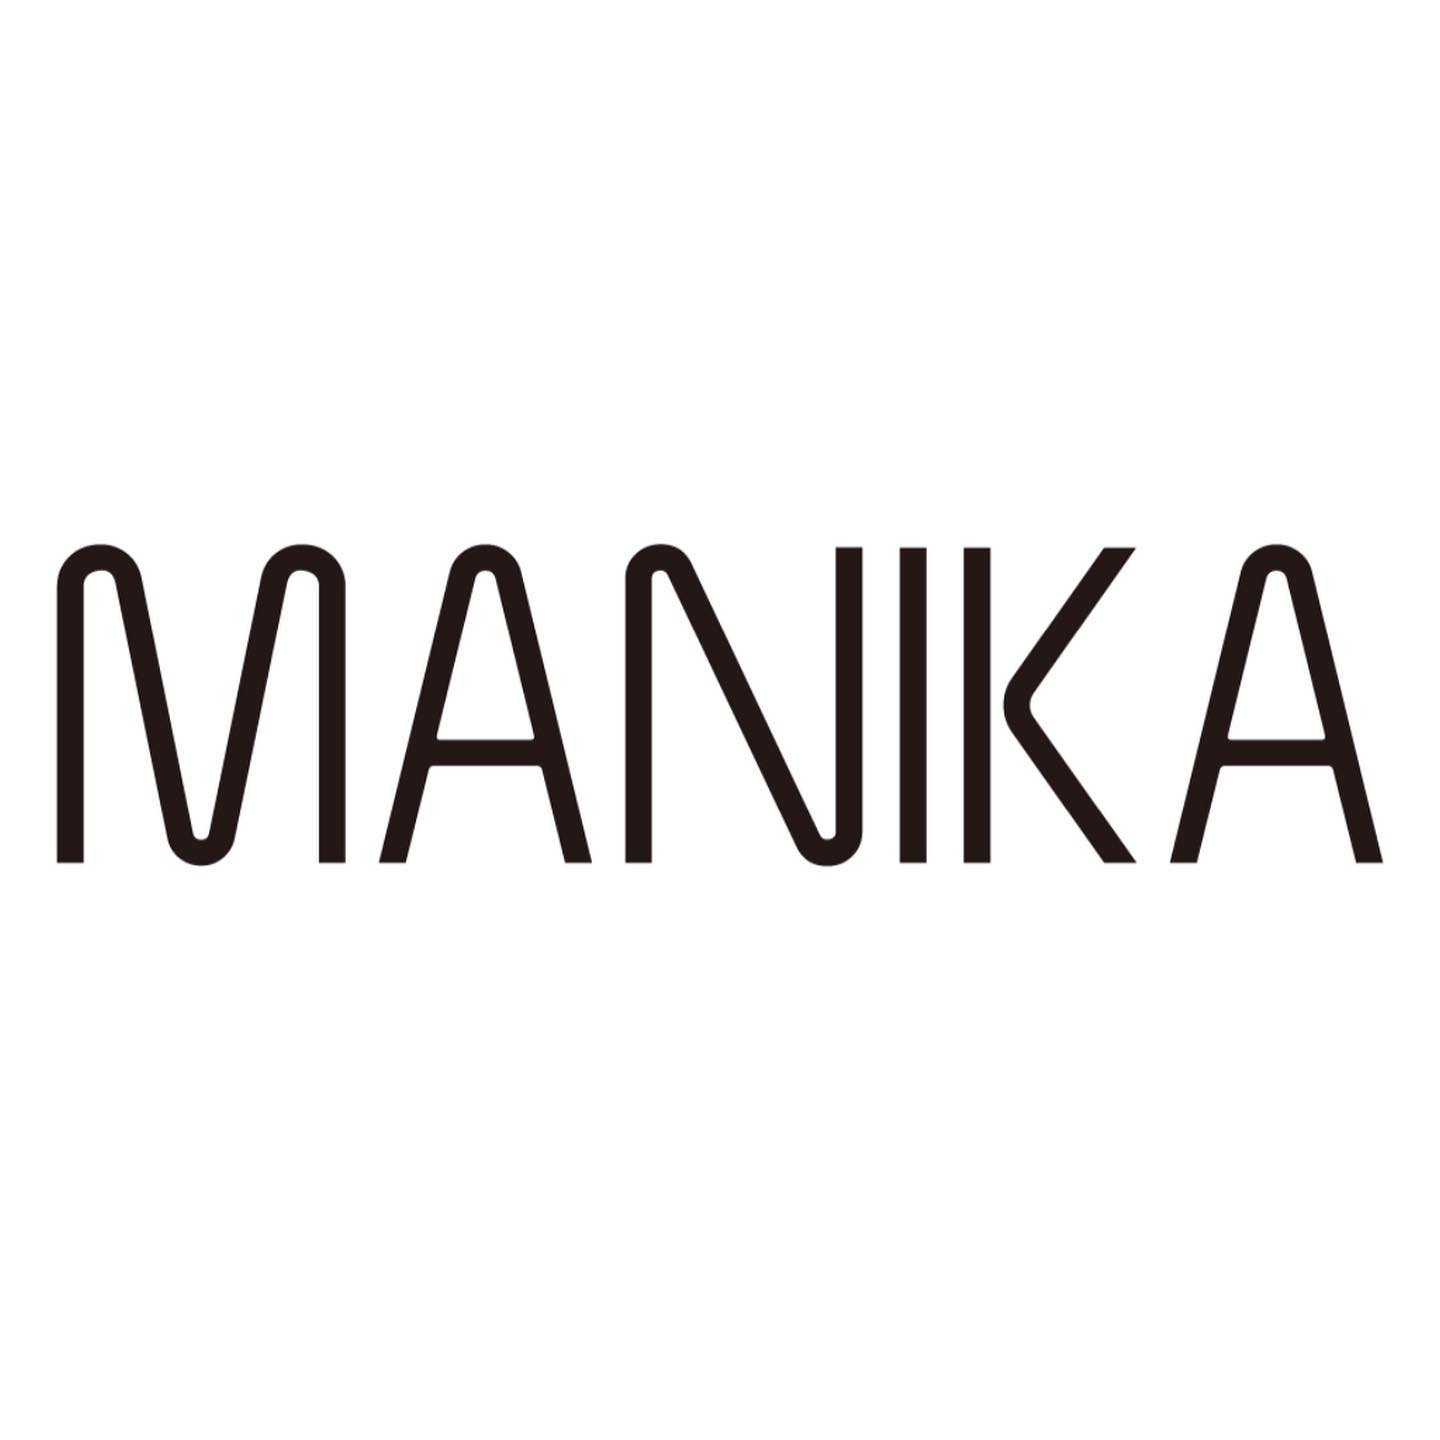 出店者紹介！・@manikafactory ・-MANIKA-私たちは東京、高円寺を拠点として、 夫婦でアウトドアアイテムをベースとした商品を、-MADE IN KOENJI-として作成したり、 古き良き時代のアイテムをリメイクしてみたりしているちいさな旅道具屋です。 好きなコト、モノ、ヒトを大切に、勝手気ままにマイペースでやってます。　　#projectnowhere#project#nowhere#沼尻高原ロッジ#沼尻